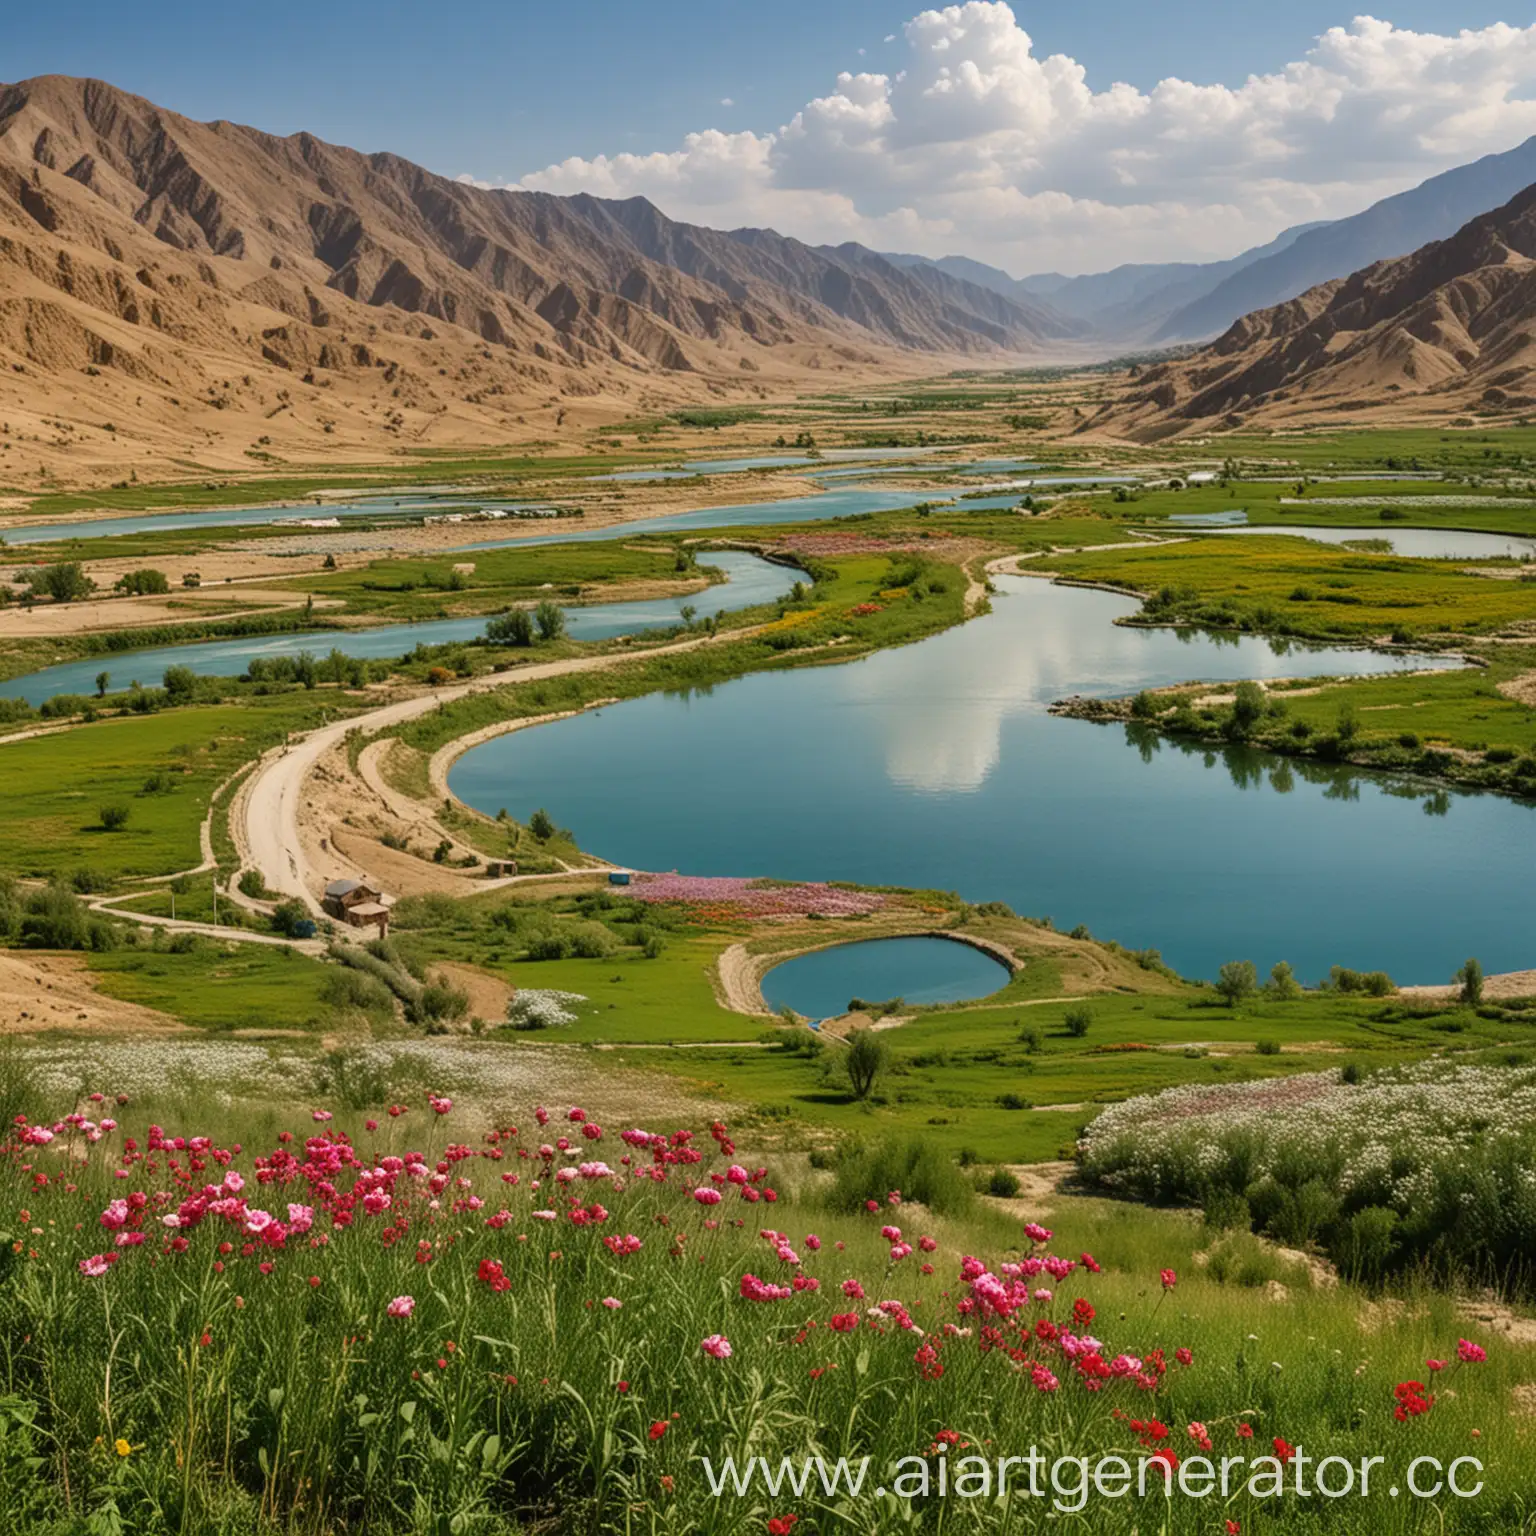 Туркменский пейзаж с живописной природой, например, виды гор, озера или цветущих полей.
